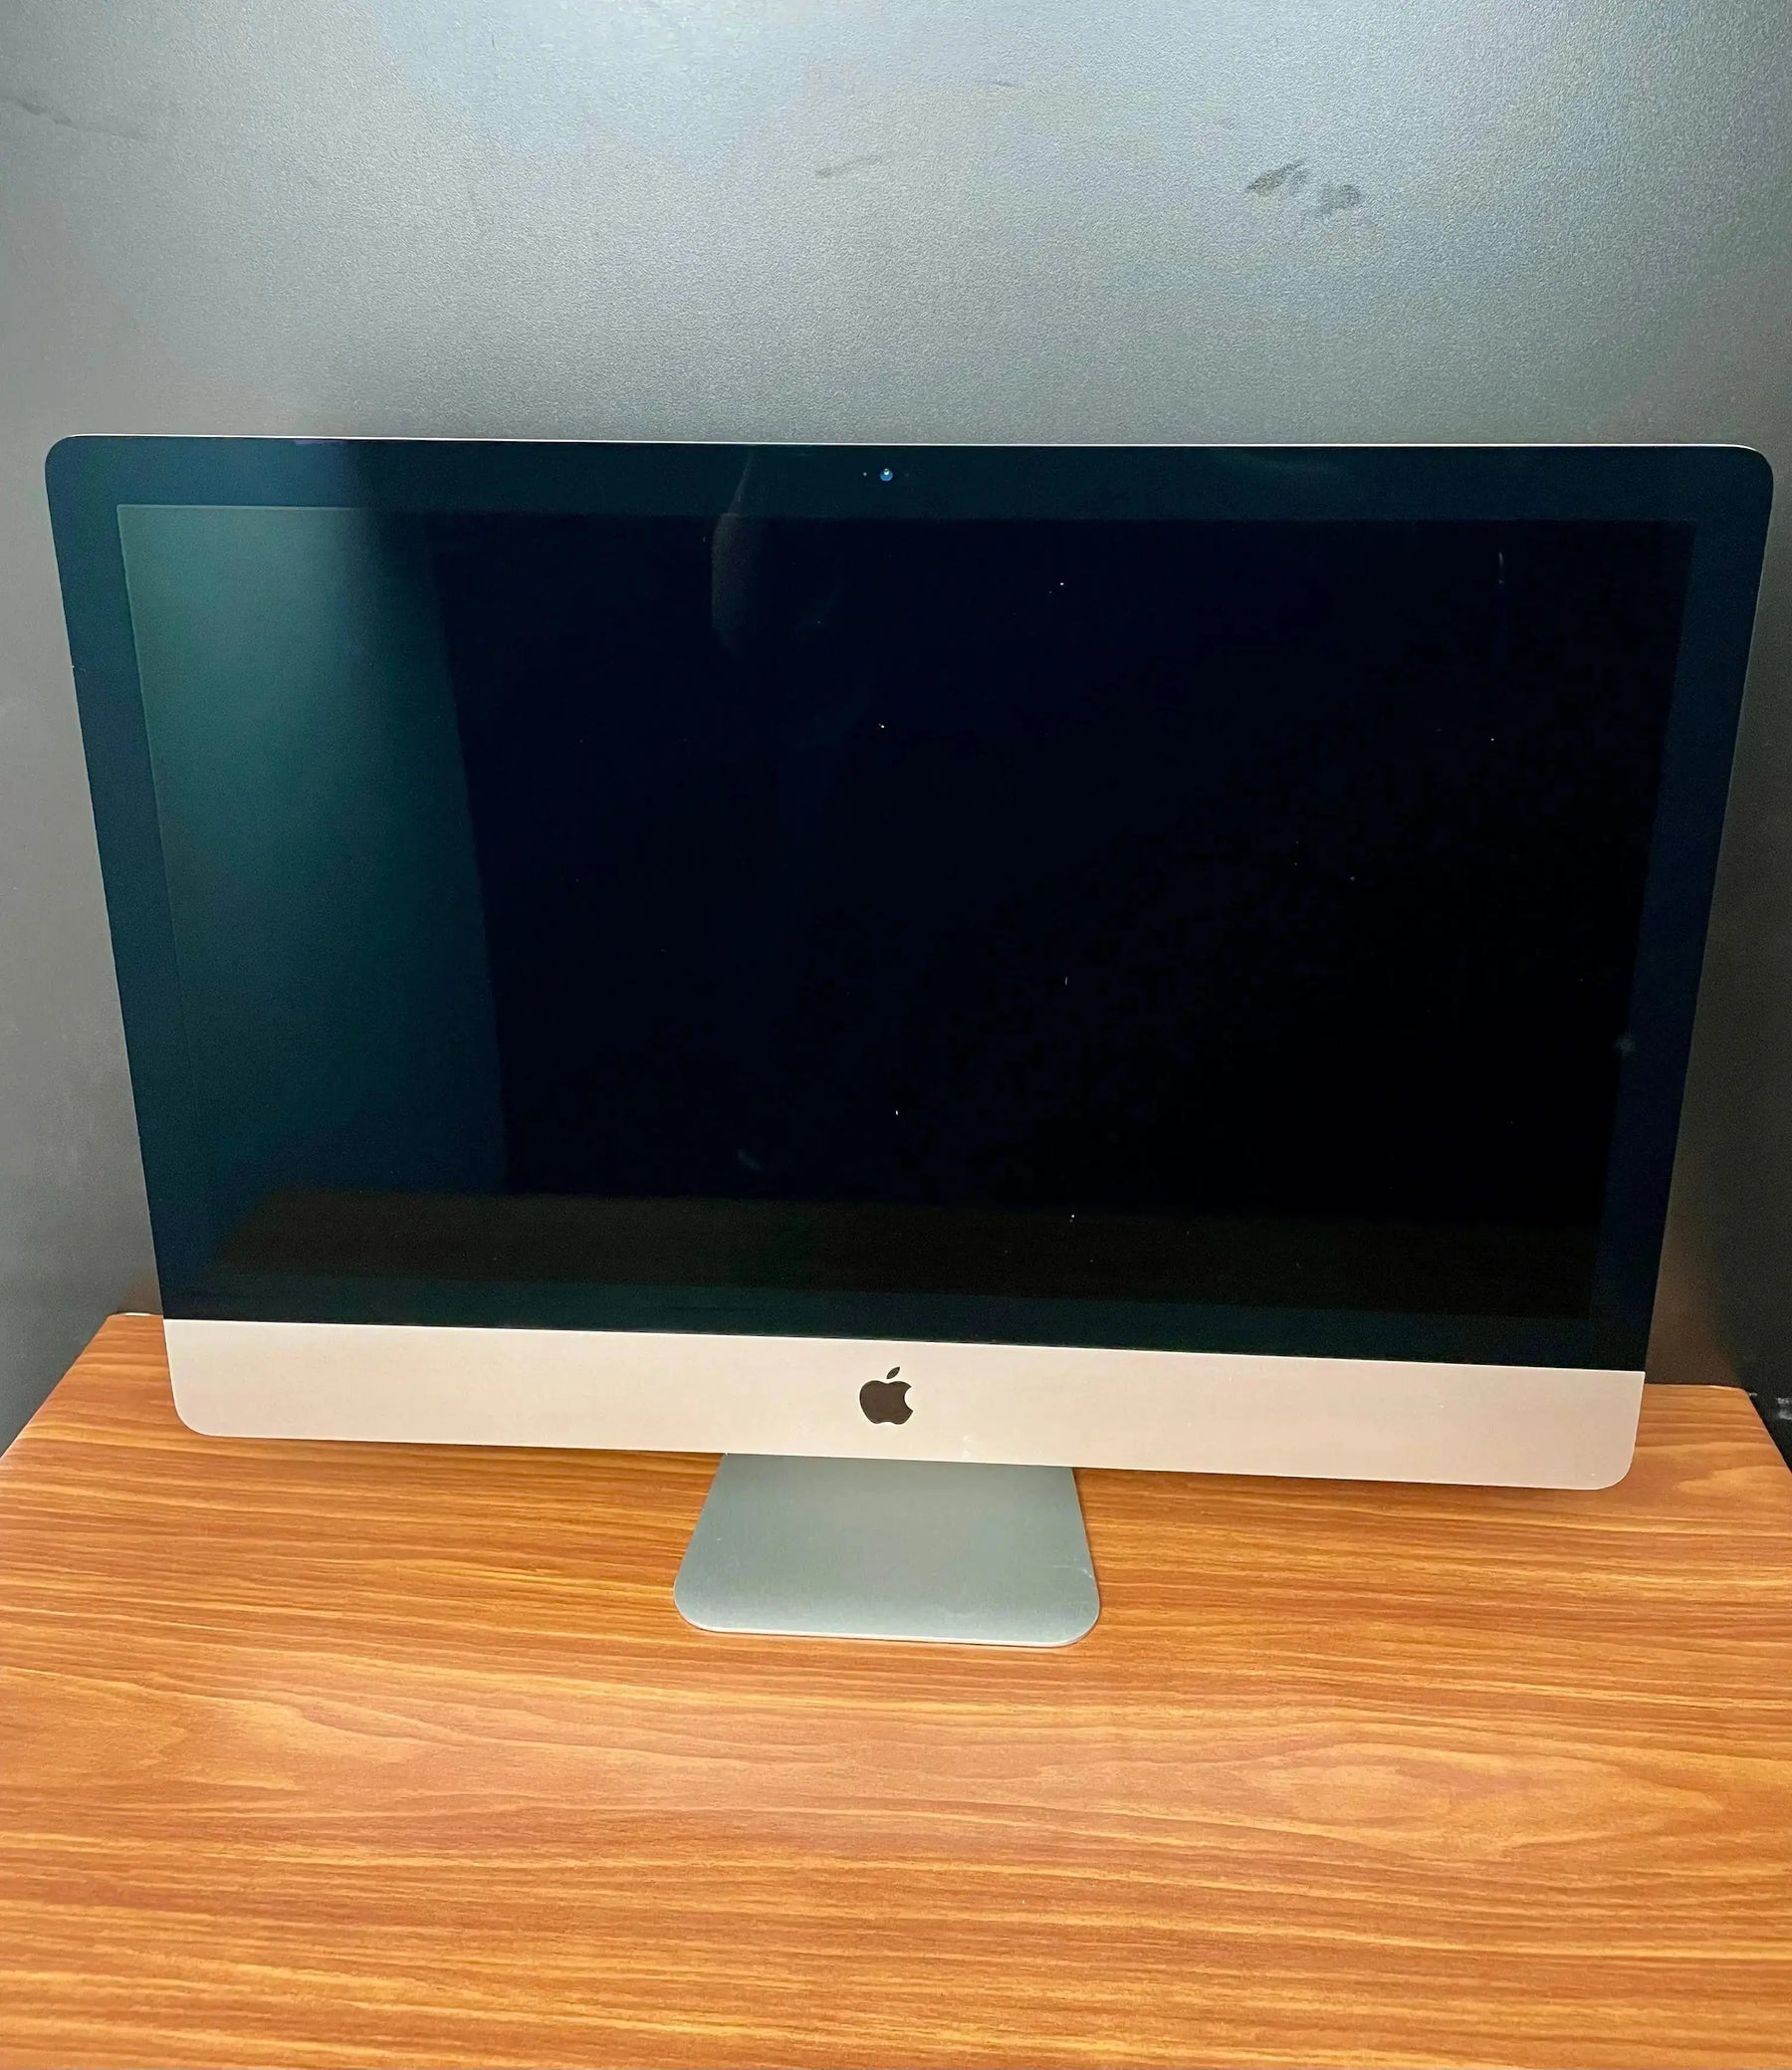 Comprar iMac usado - iMac 27 i5 3.2GHZ 2015 - TrocaTech Seminovos